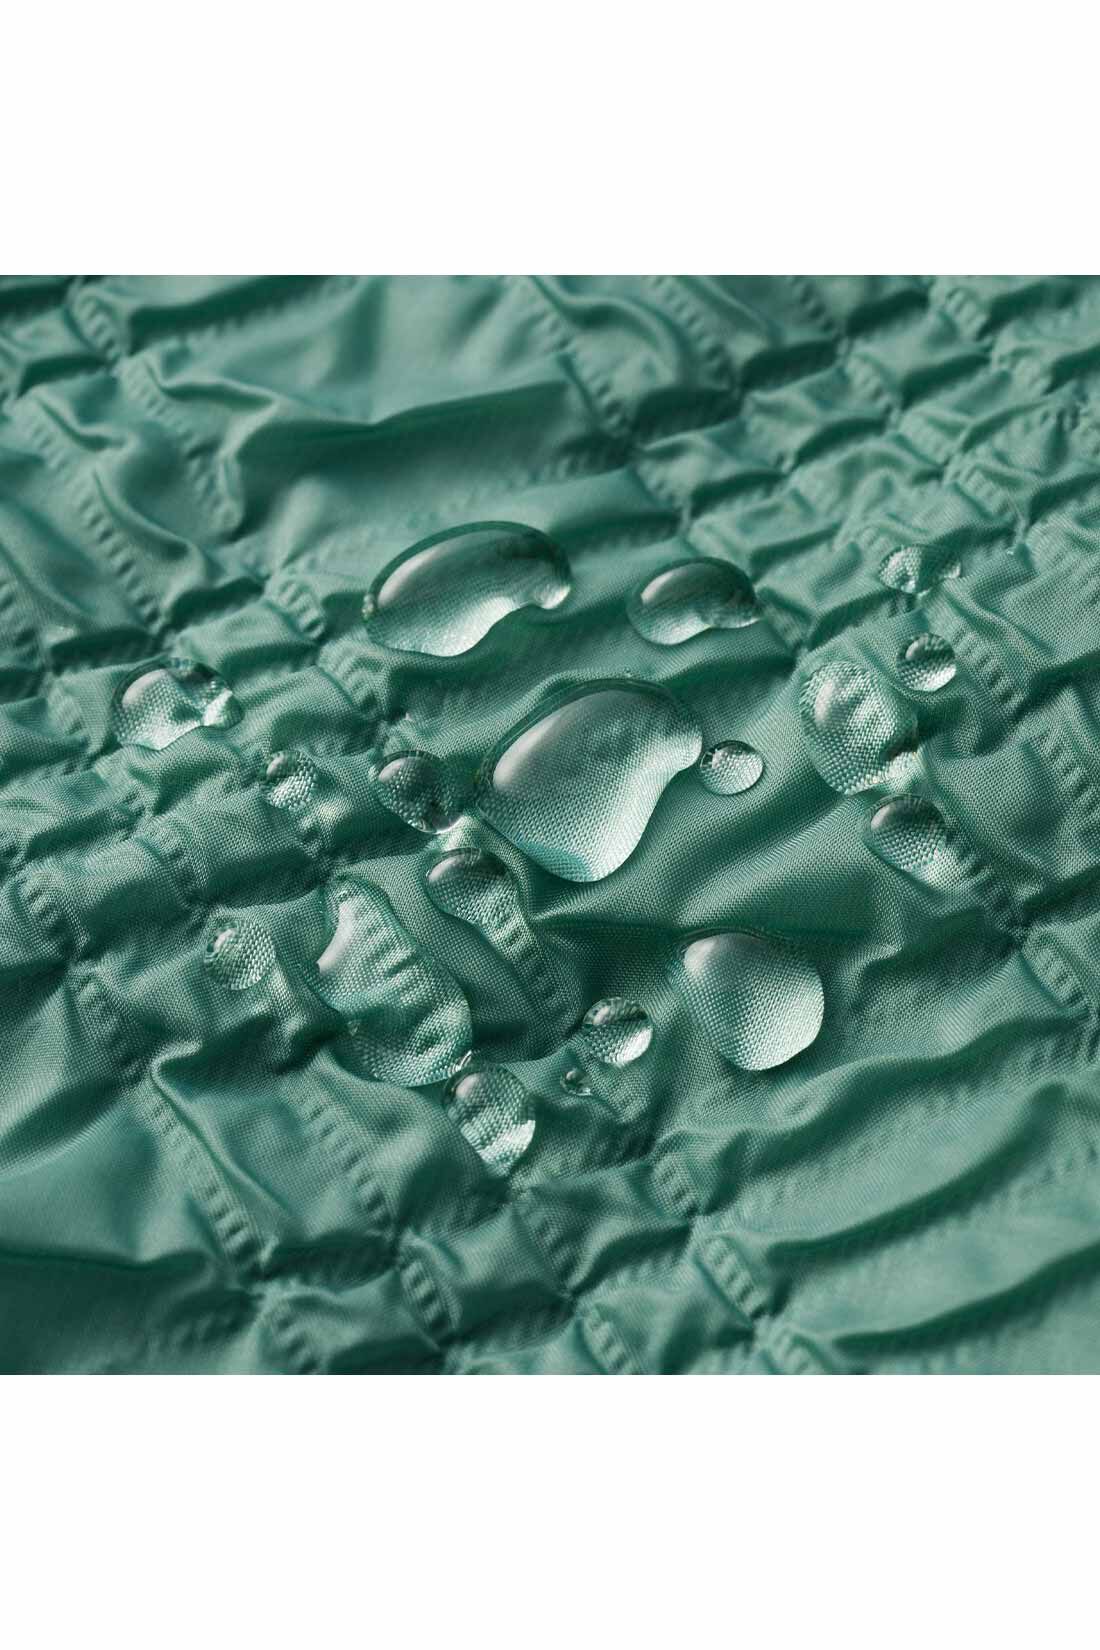 IEDIT|IEDIT[イディット]　エンボス加工をほどこした 撥水（はっすい）素材の切り替えスカート|撥水加工をほどこしたナイロン素材はテカリをおさえた上品な素材感。